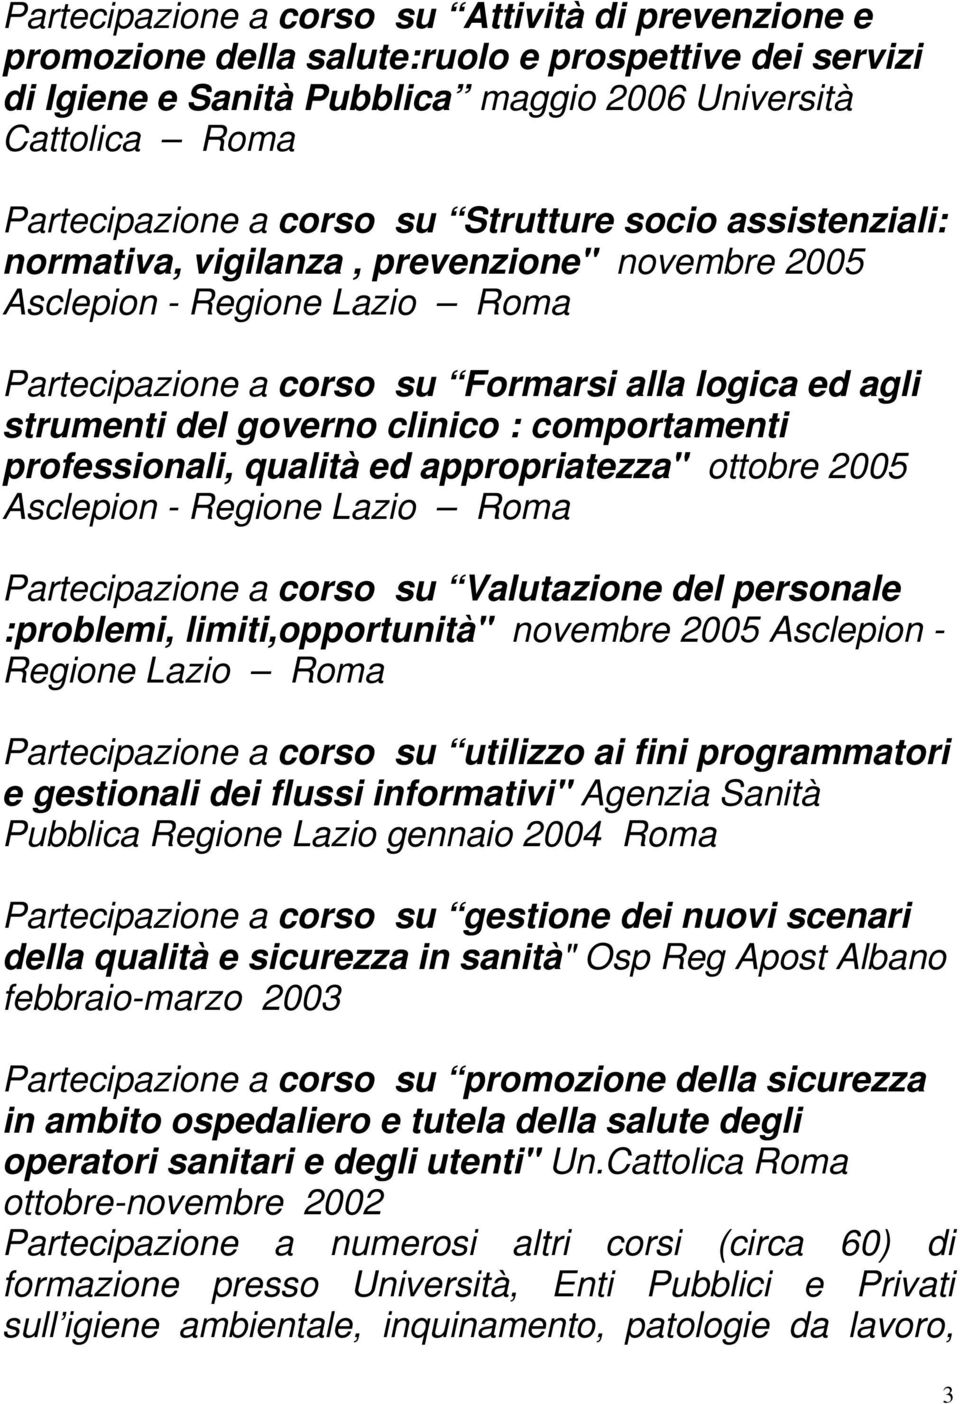 comportamenti professionali, qualità ed appropriatezza" ottobre 2005 Asclepion - Regione Lazio Roma Partecipazione a corso su Valutazione del personale :problemi, limiti,opportunità" novembre 2005